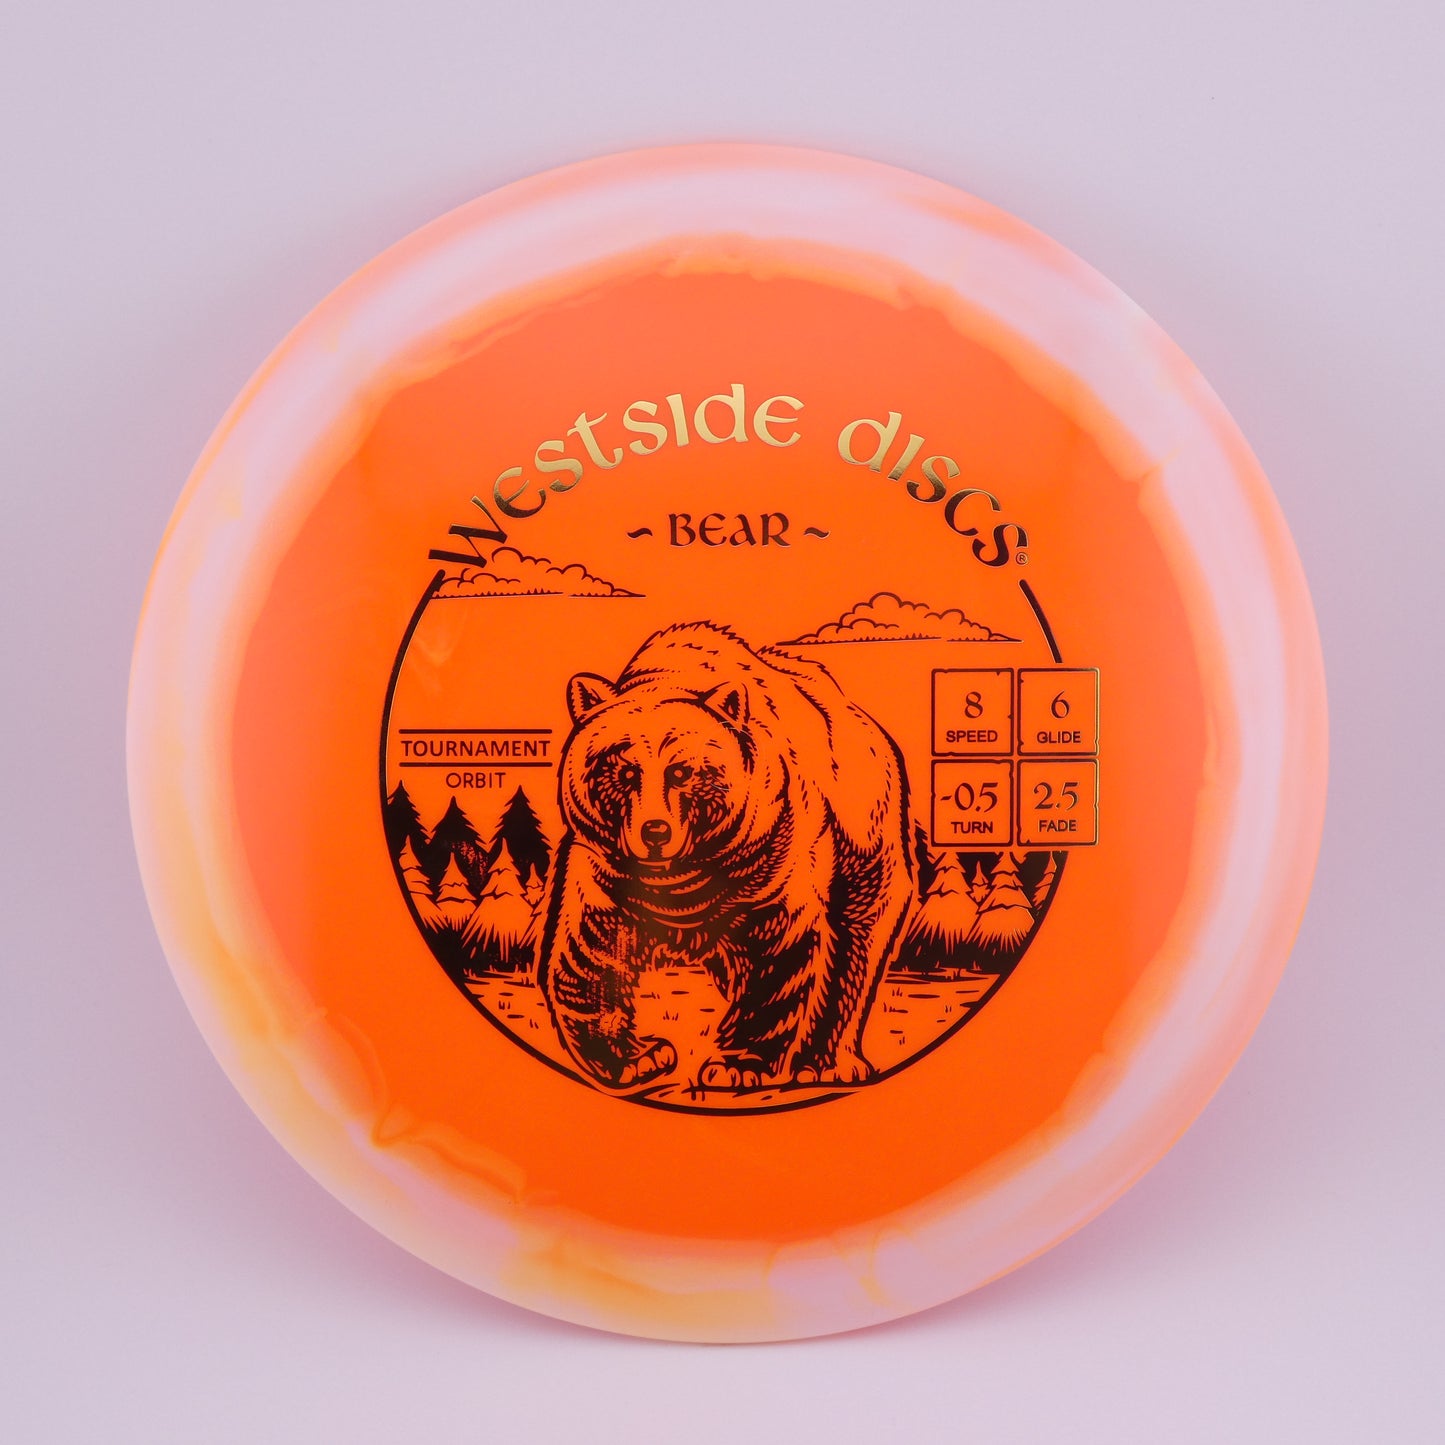 Tournament Orbit Bear 173-176g